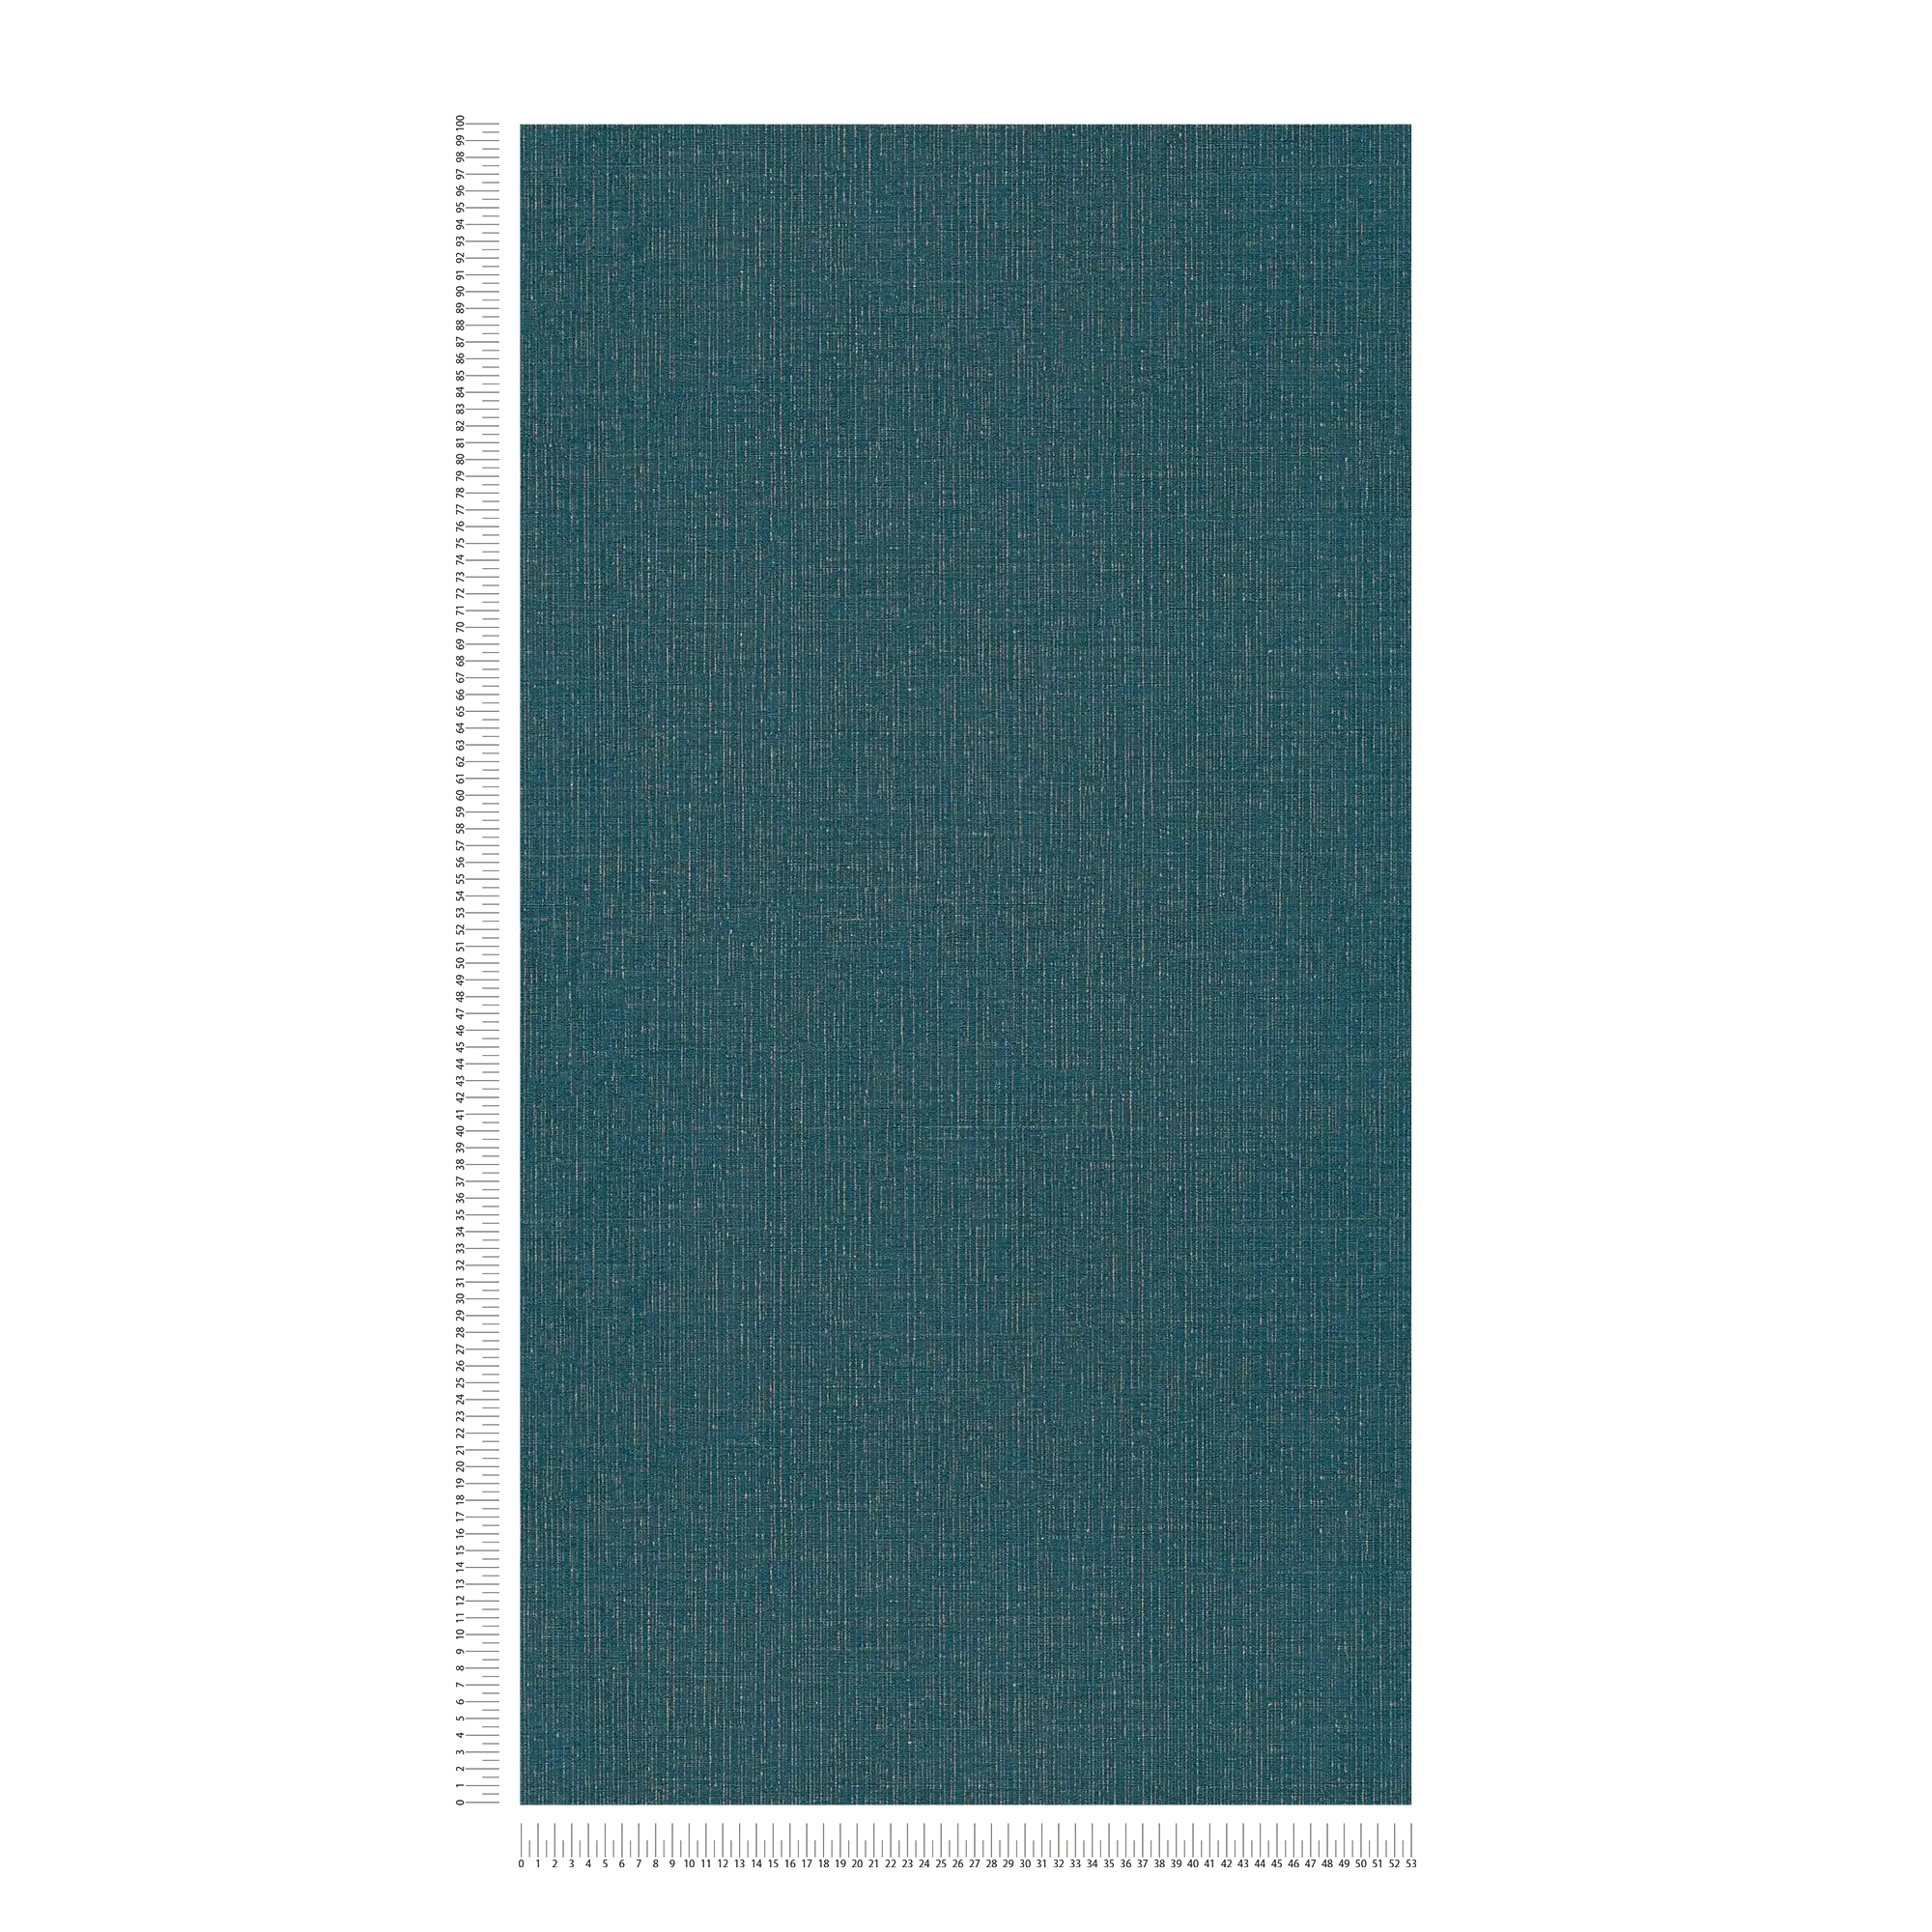             Pétrole Papier peint doré chiné avec structure textile - bleu, métallique
        